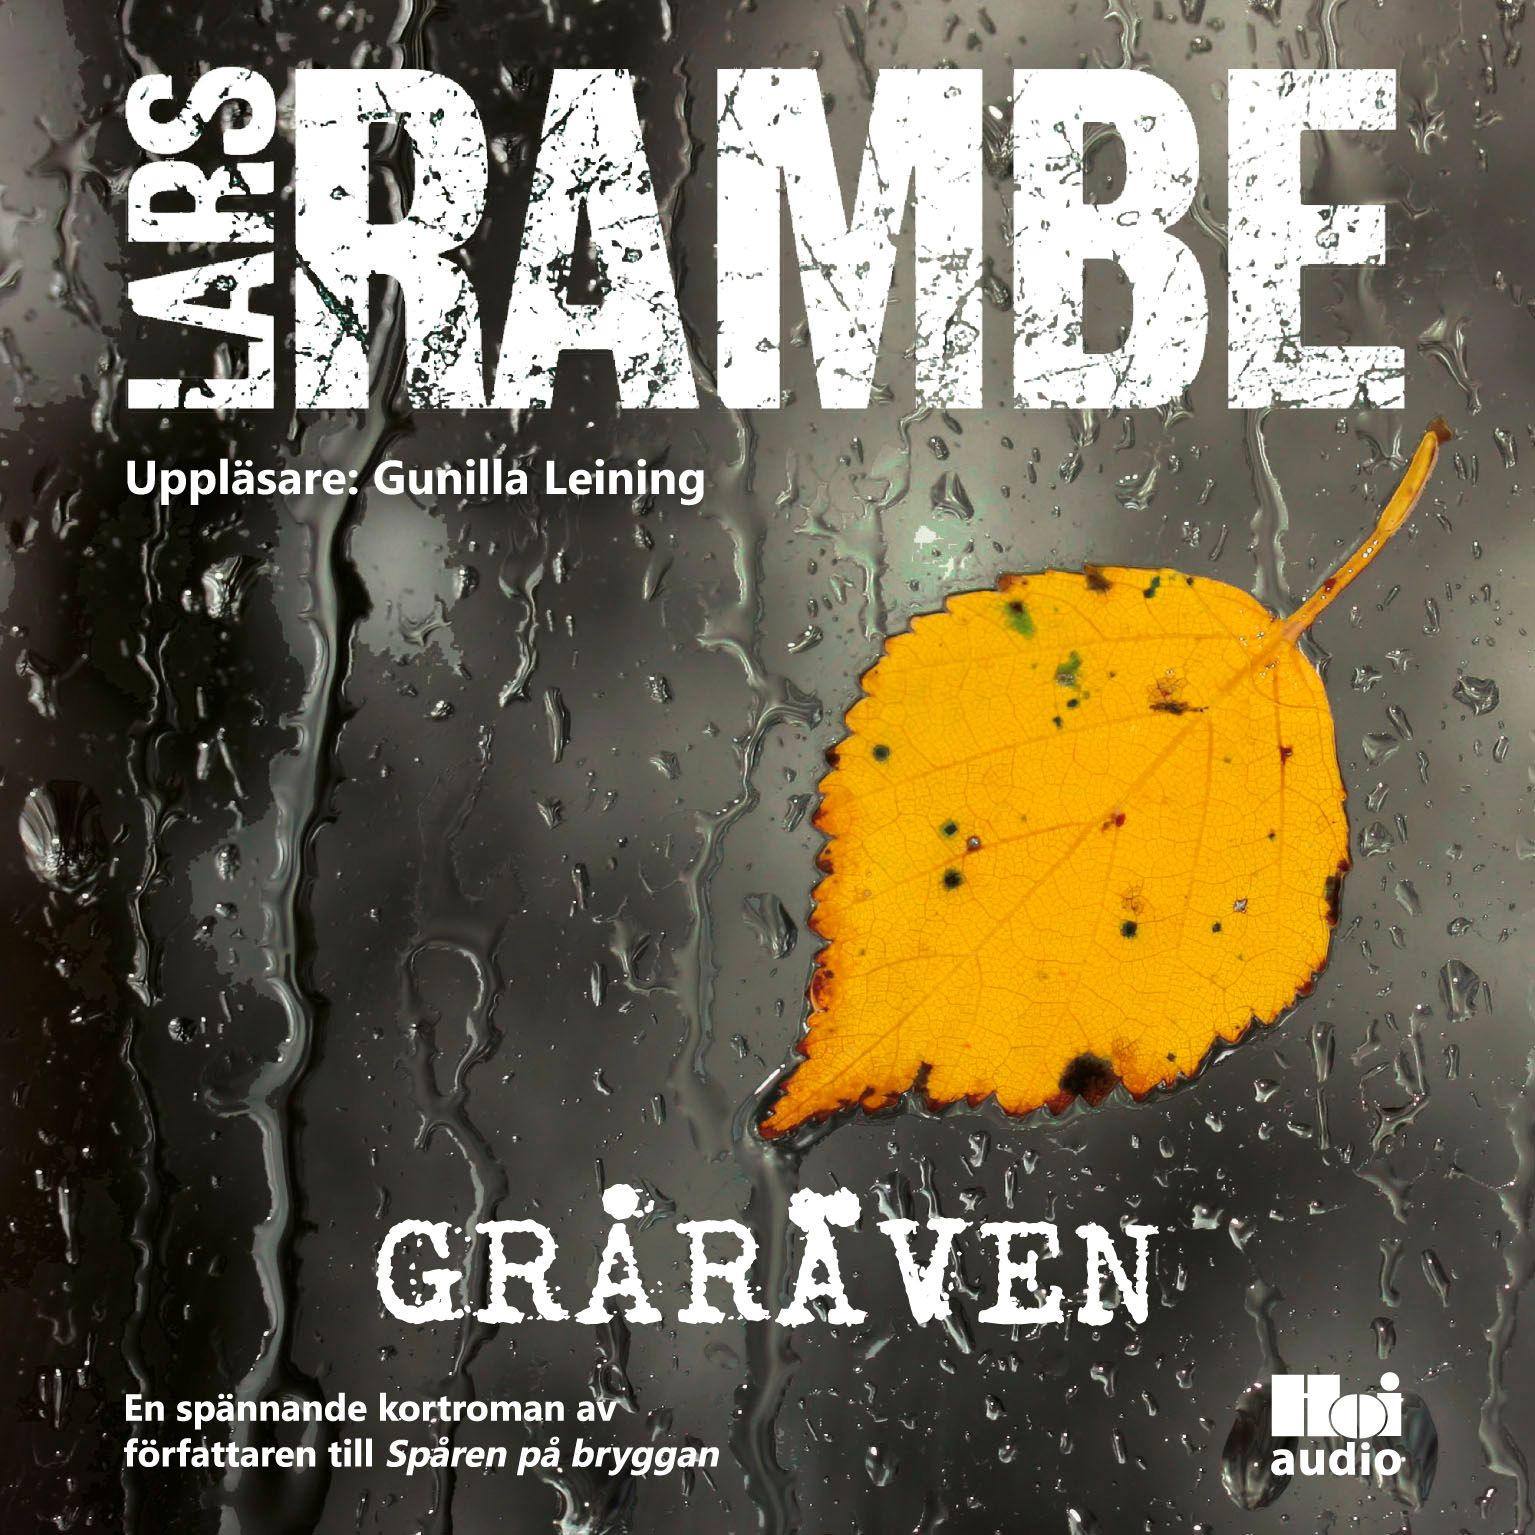 Gråräven, audiobook by Lars Rambe